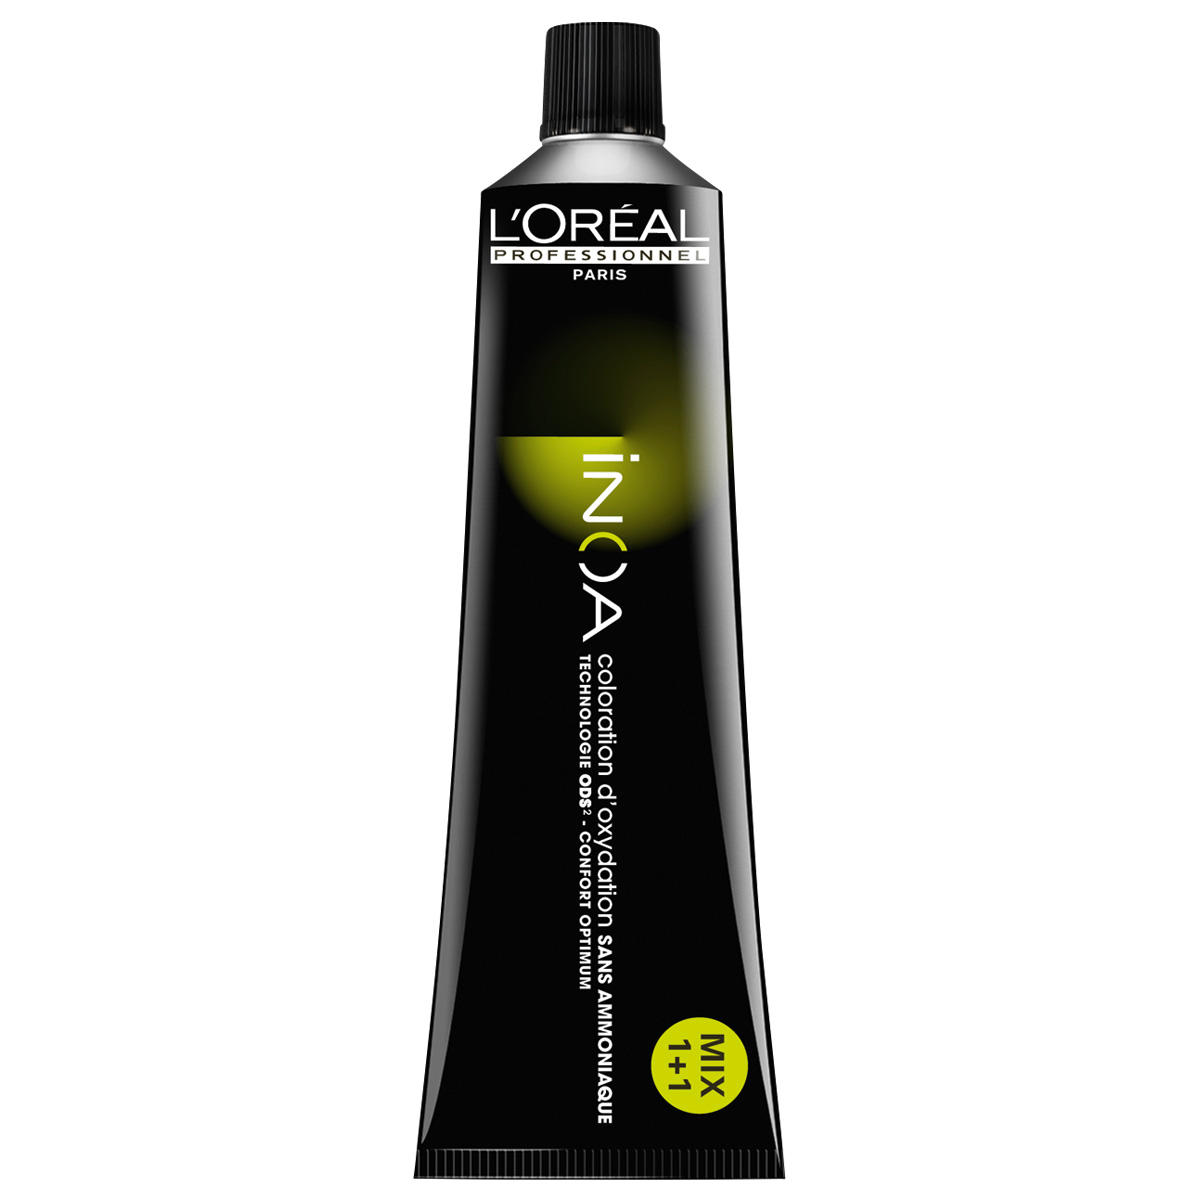 L'Oréal Professionnel Paris Coloration 5.8 Lichtbruine mokka, tube 60 ml